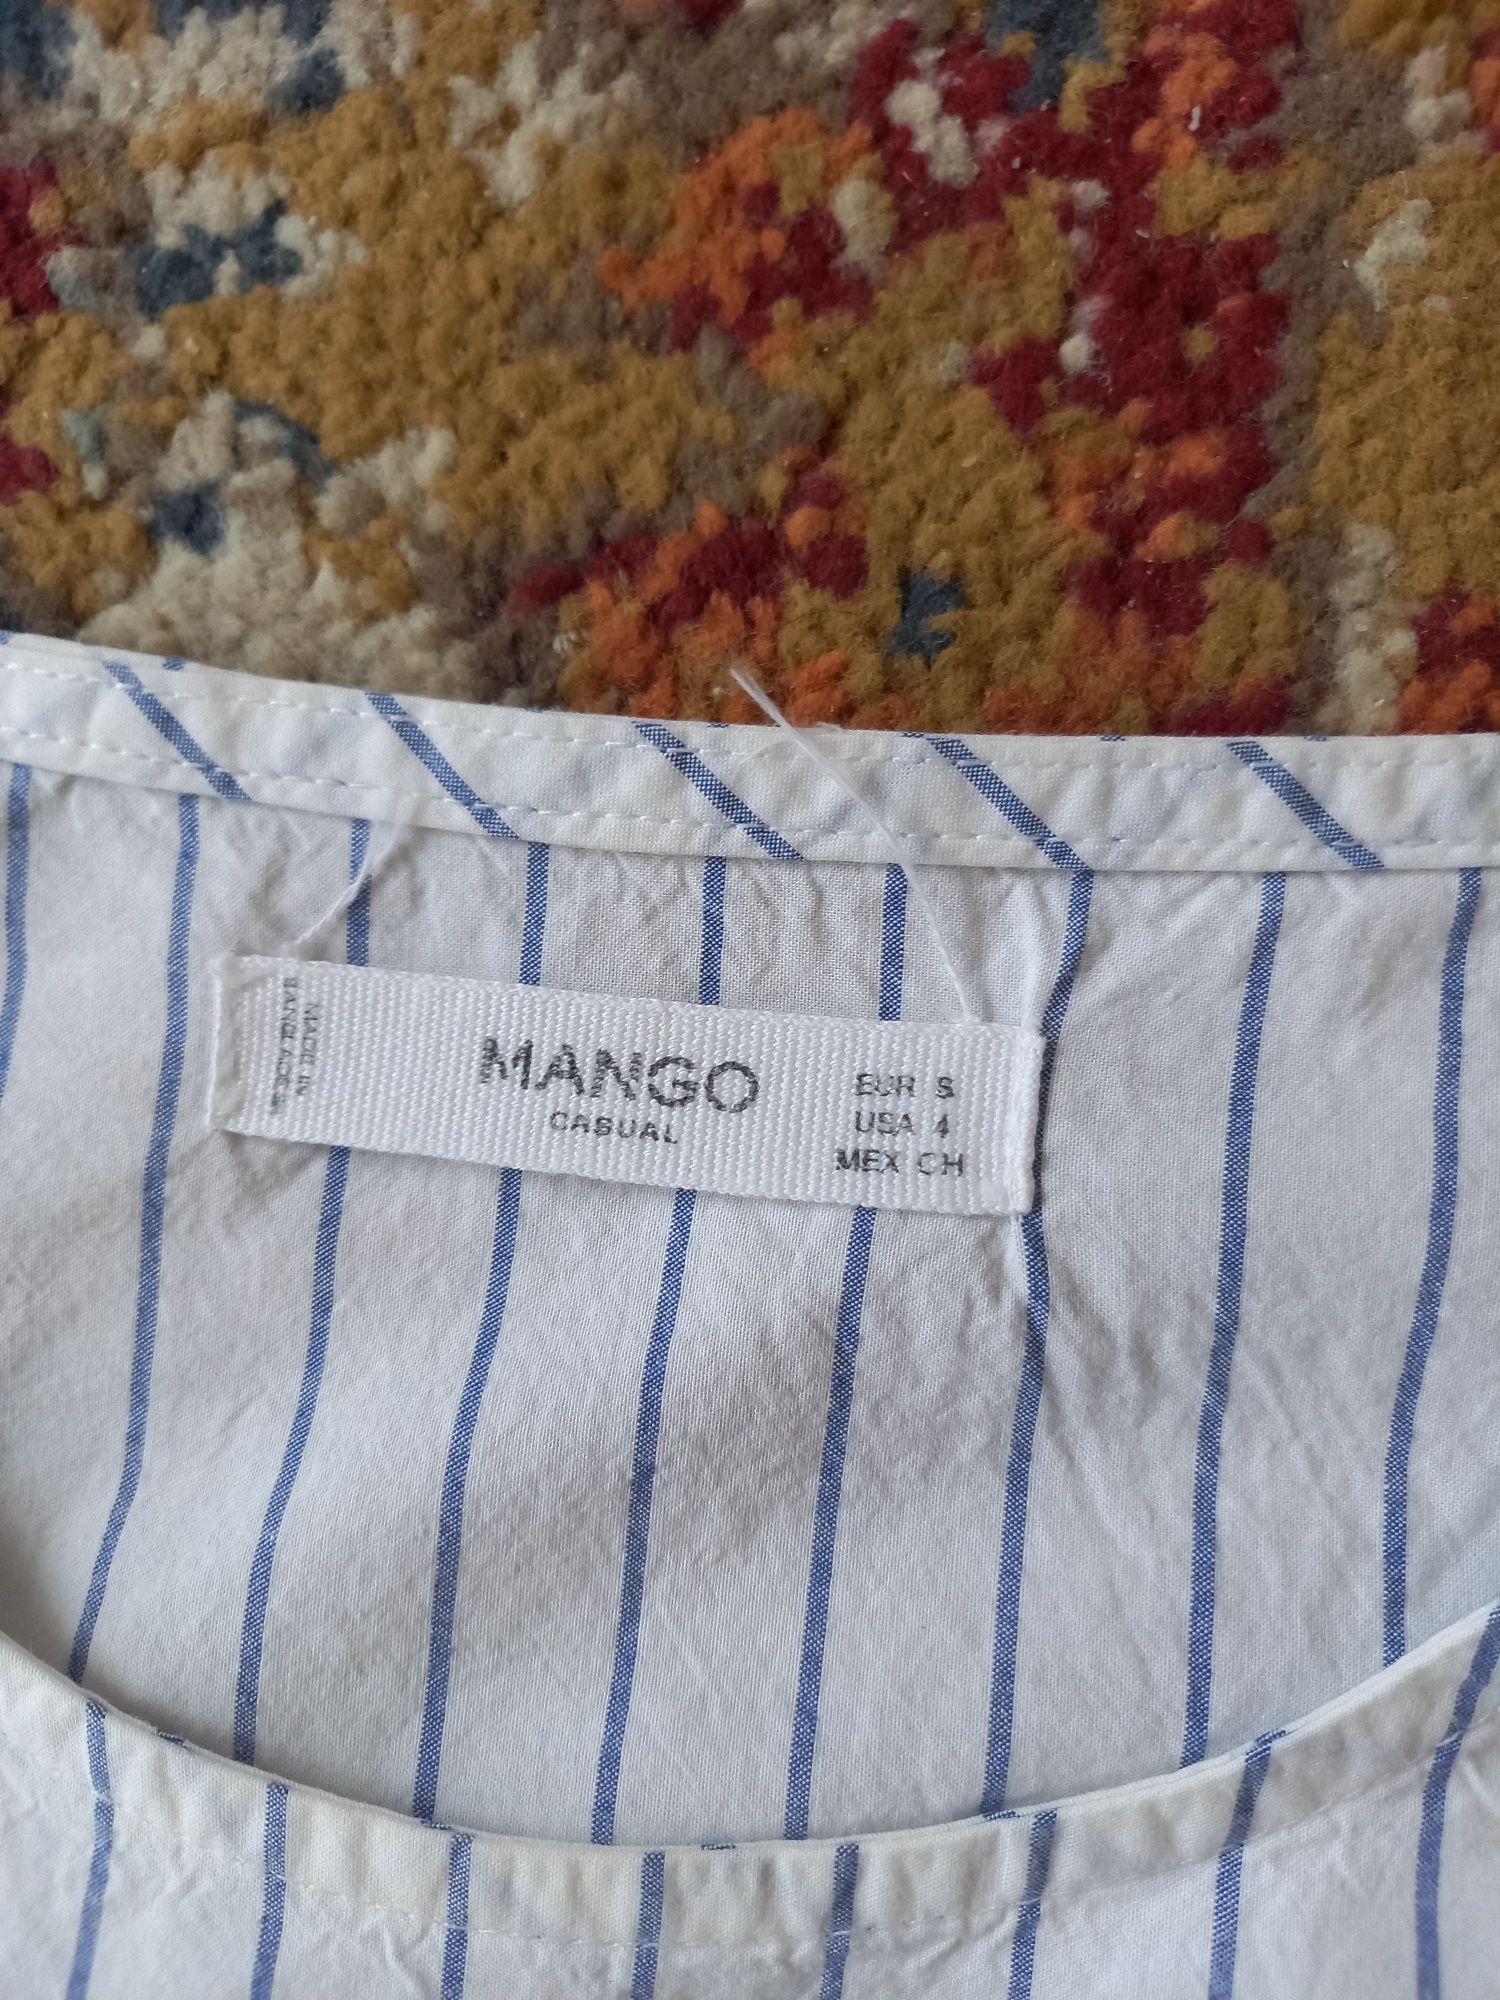 Biały w niebieskie paski top firmy Mango rozmiar S